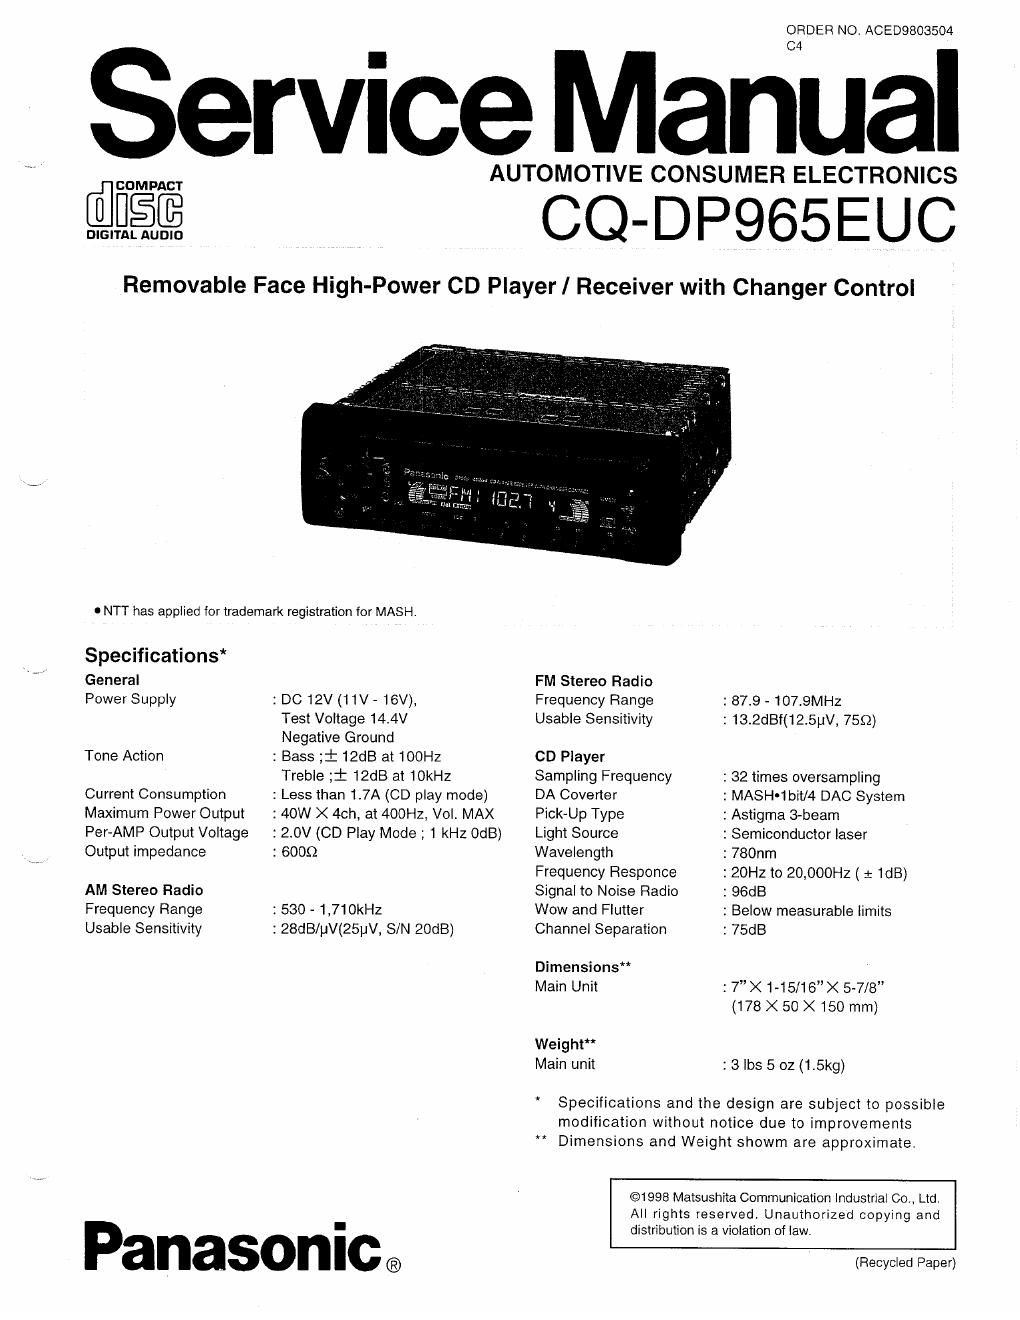 panasonic cq dp 965 euc service manual